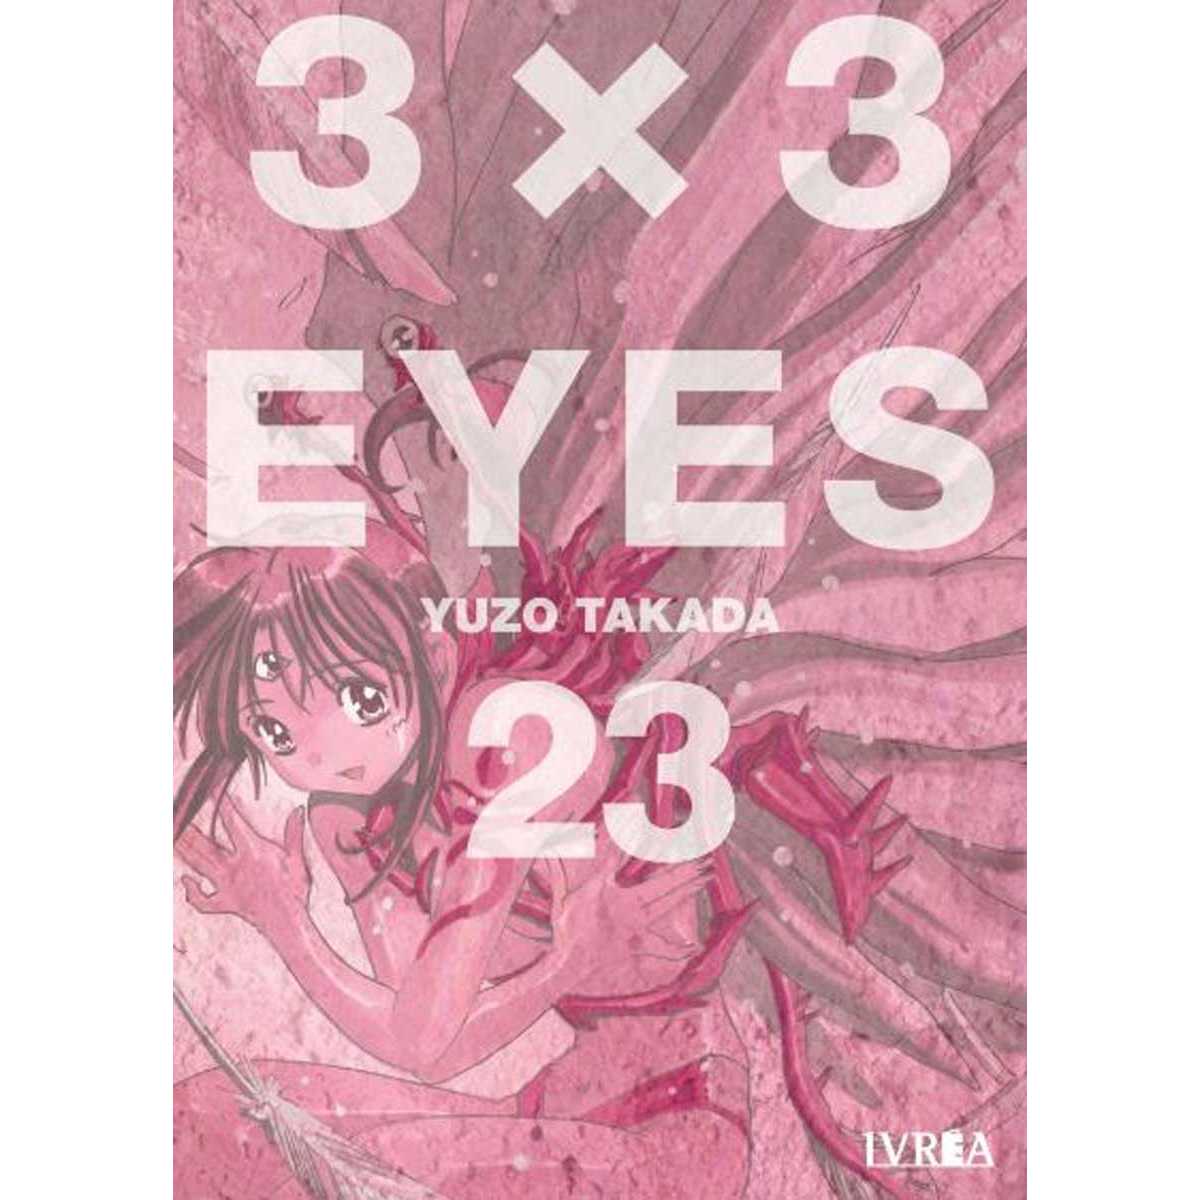 3X3 Eyes 23